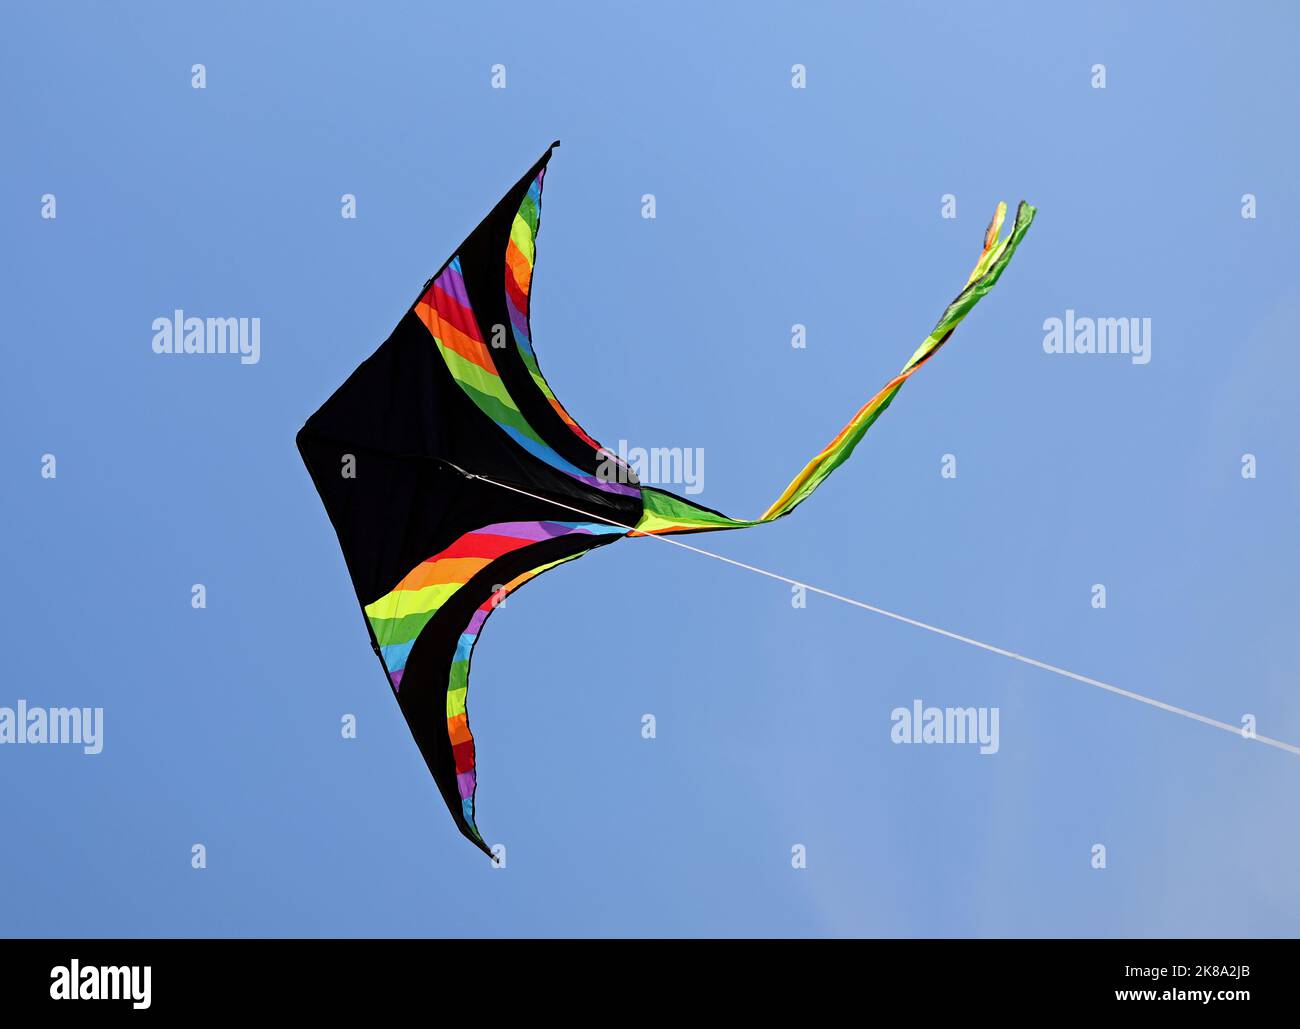 CERF-volant NOIR avec des bandes de différentes couleurs de l'arc-en-ciel volant sur le ciel bleu Banque D'Images